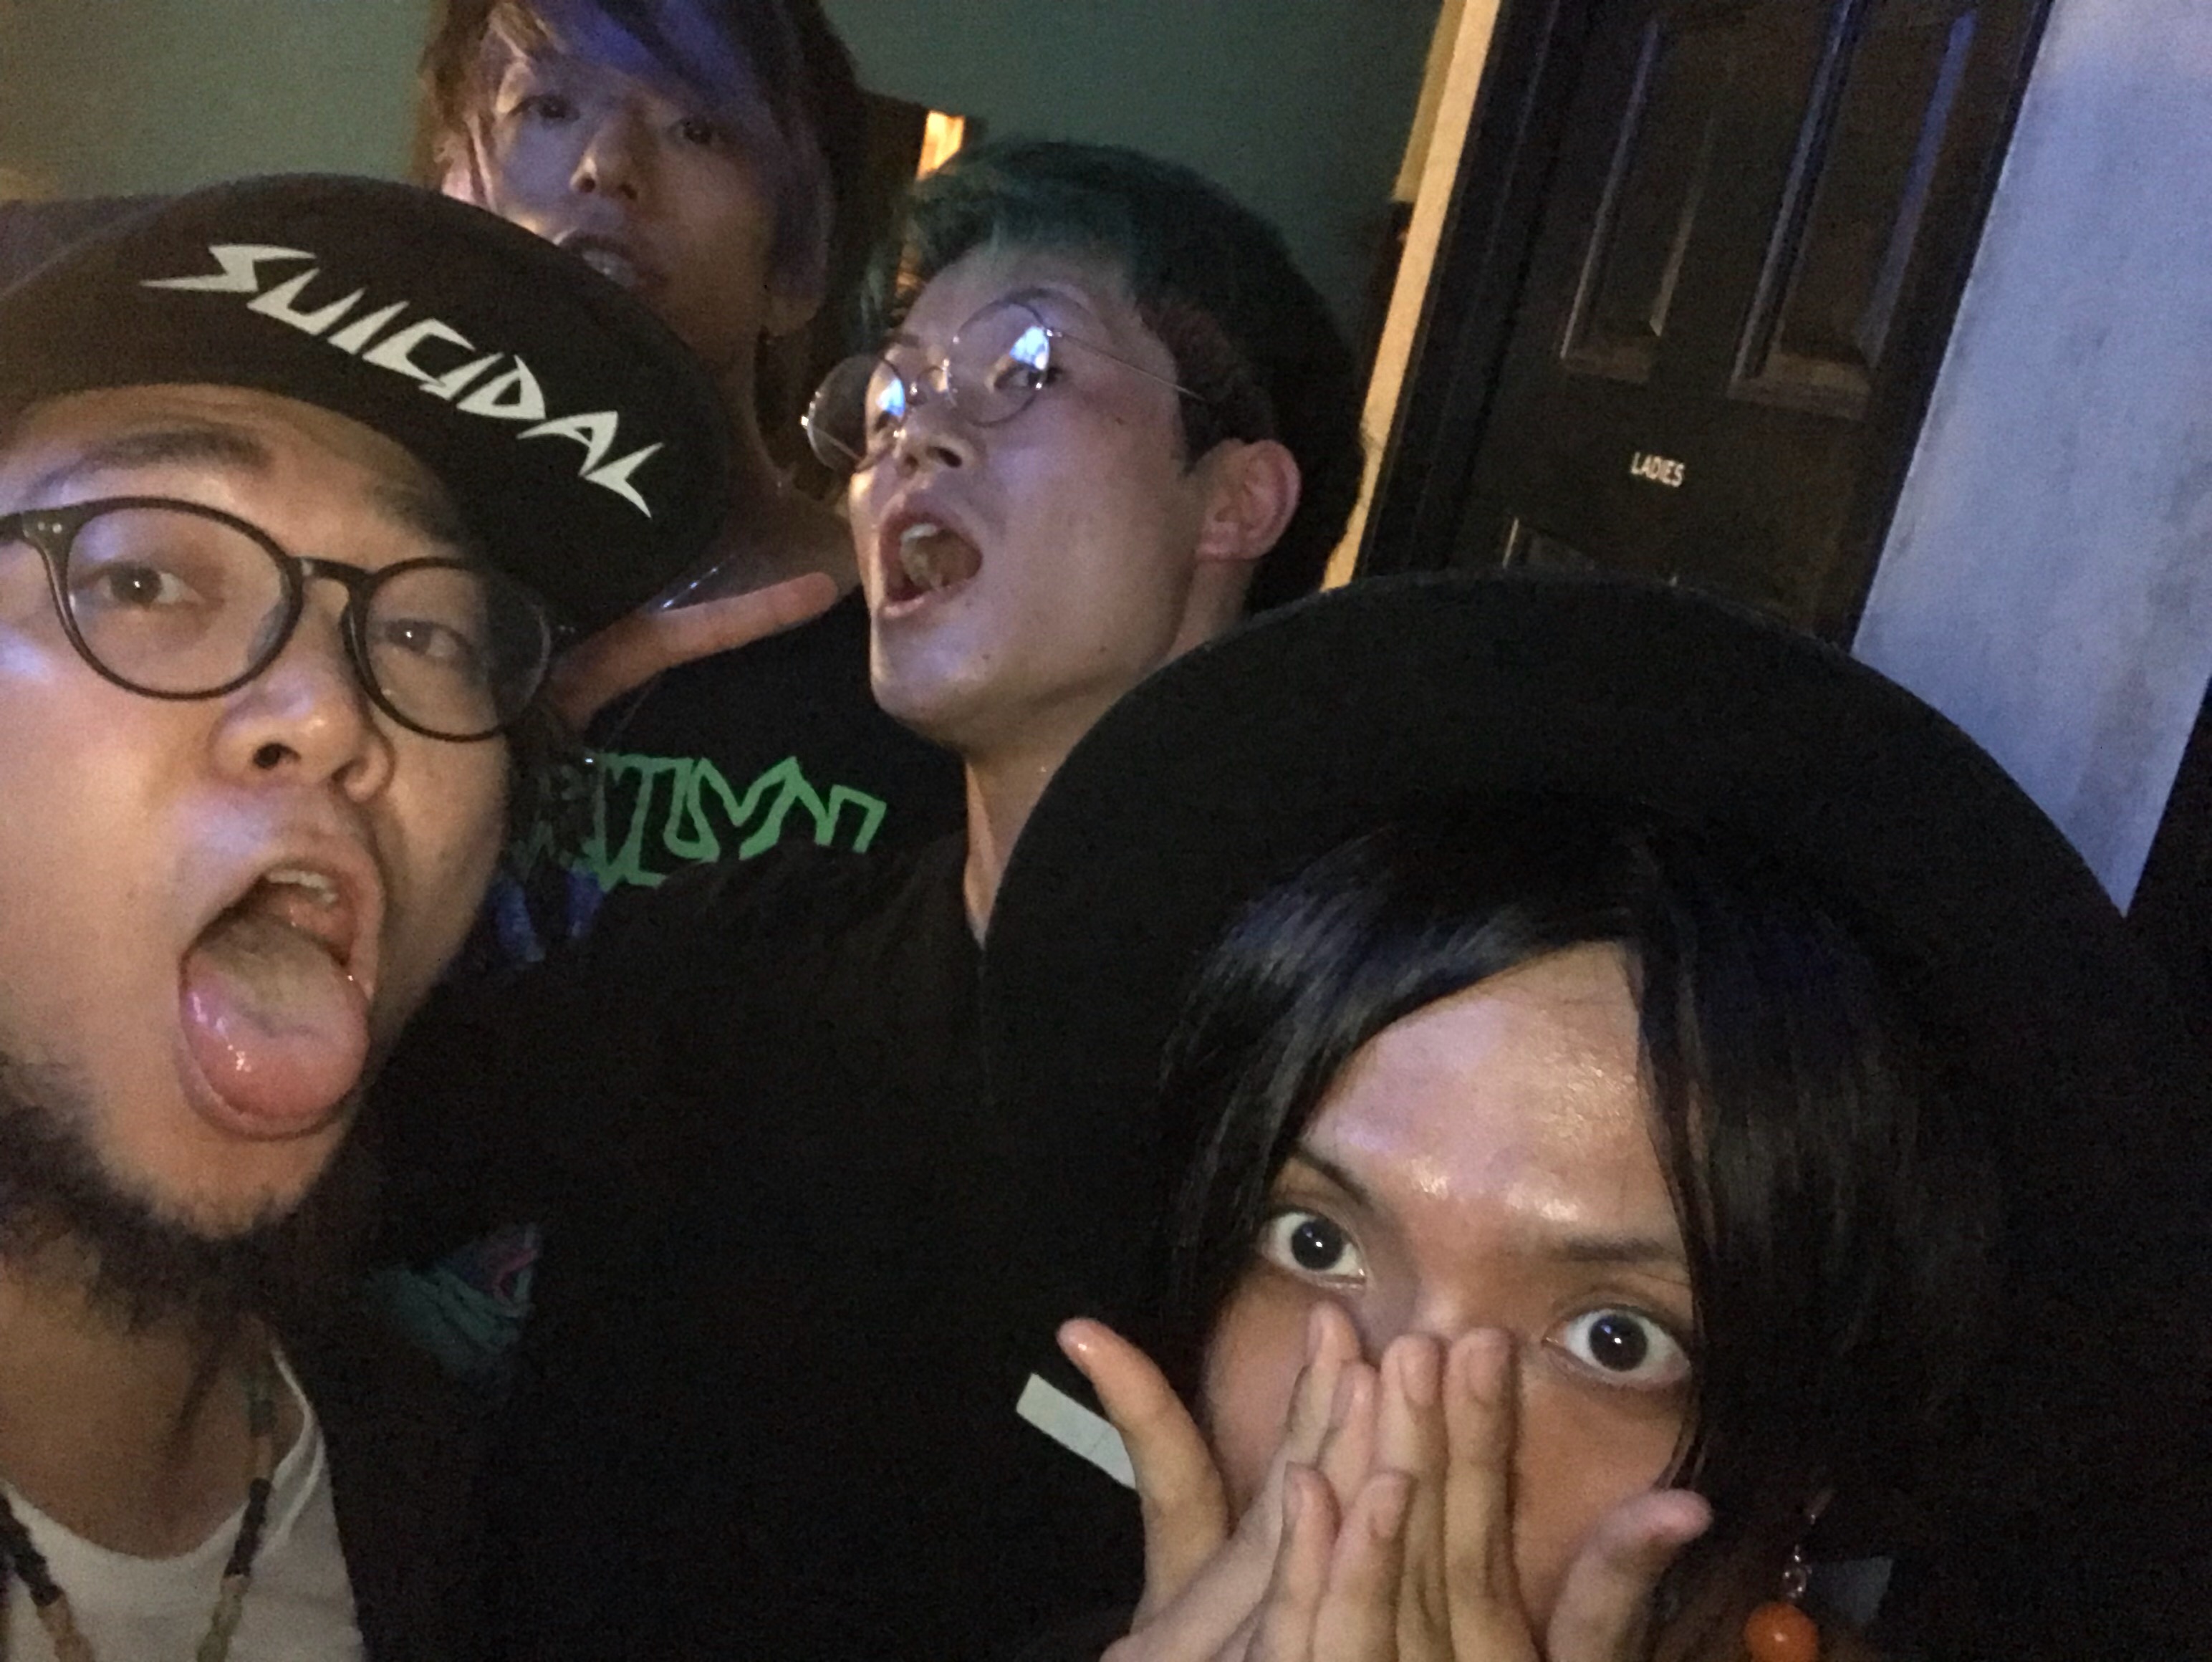 https://bar-rockaholic.jp/shibuya/blog/AFF9A994-5D5C-473A-AEFC-3FF36601ABE2.jpeg